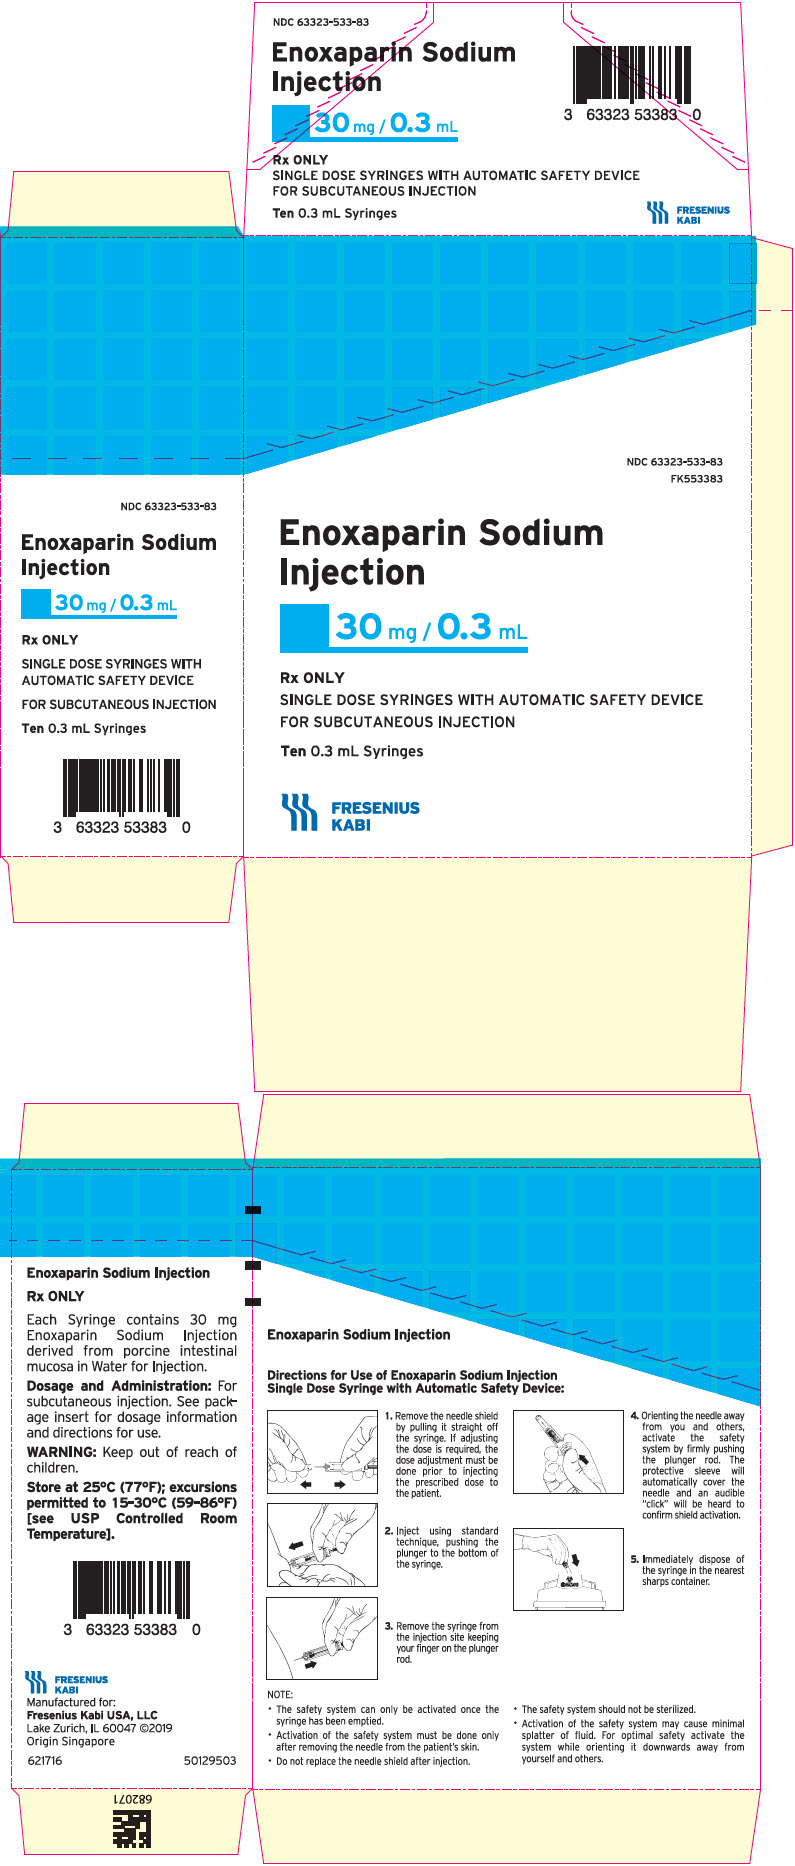 PRINCIPAL DISPLAY PANEL - 30 mg/0.3 mL Syringe Carton